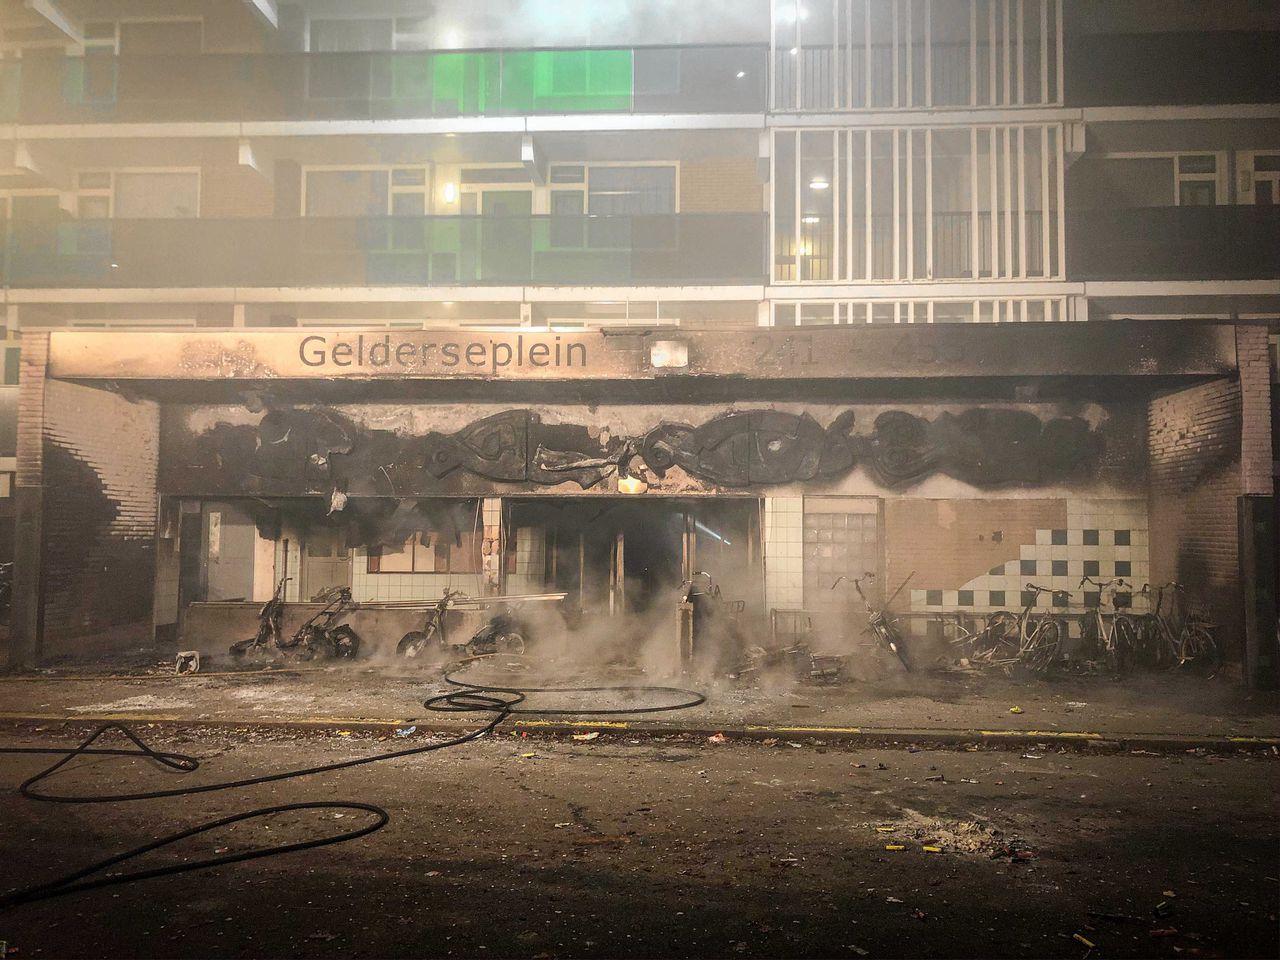 De flat aan het Gelderseplein in Arnhem waar op nieuwjaarsnacht de brand uitbrak.